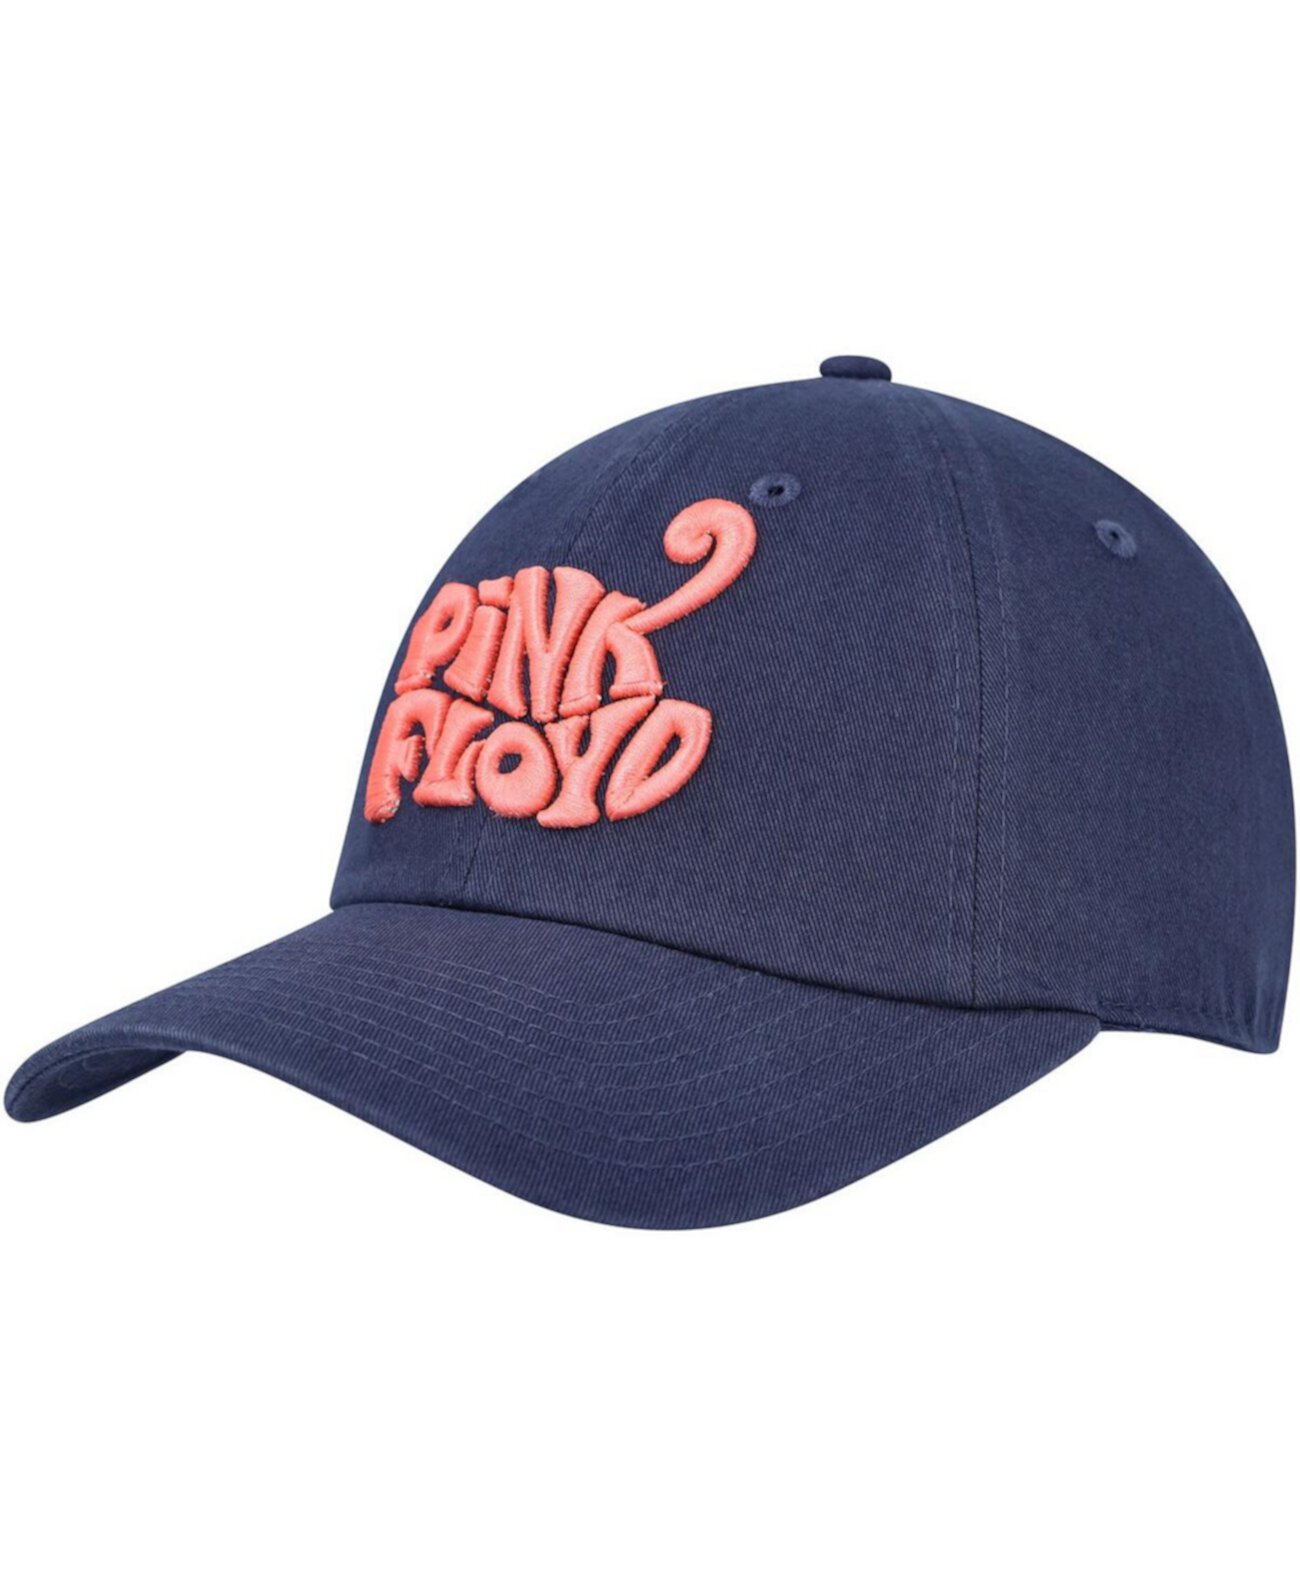 Мужская темно-синяя регулируемая кепка Pink Floyd Ballpark American Needle